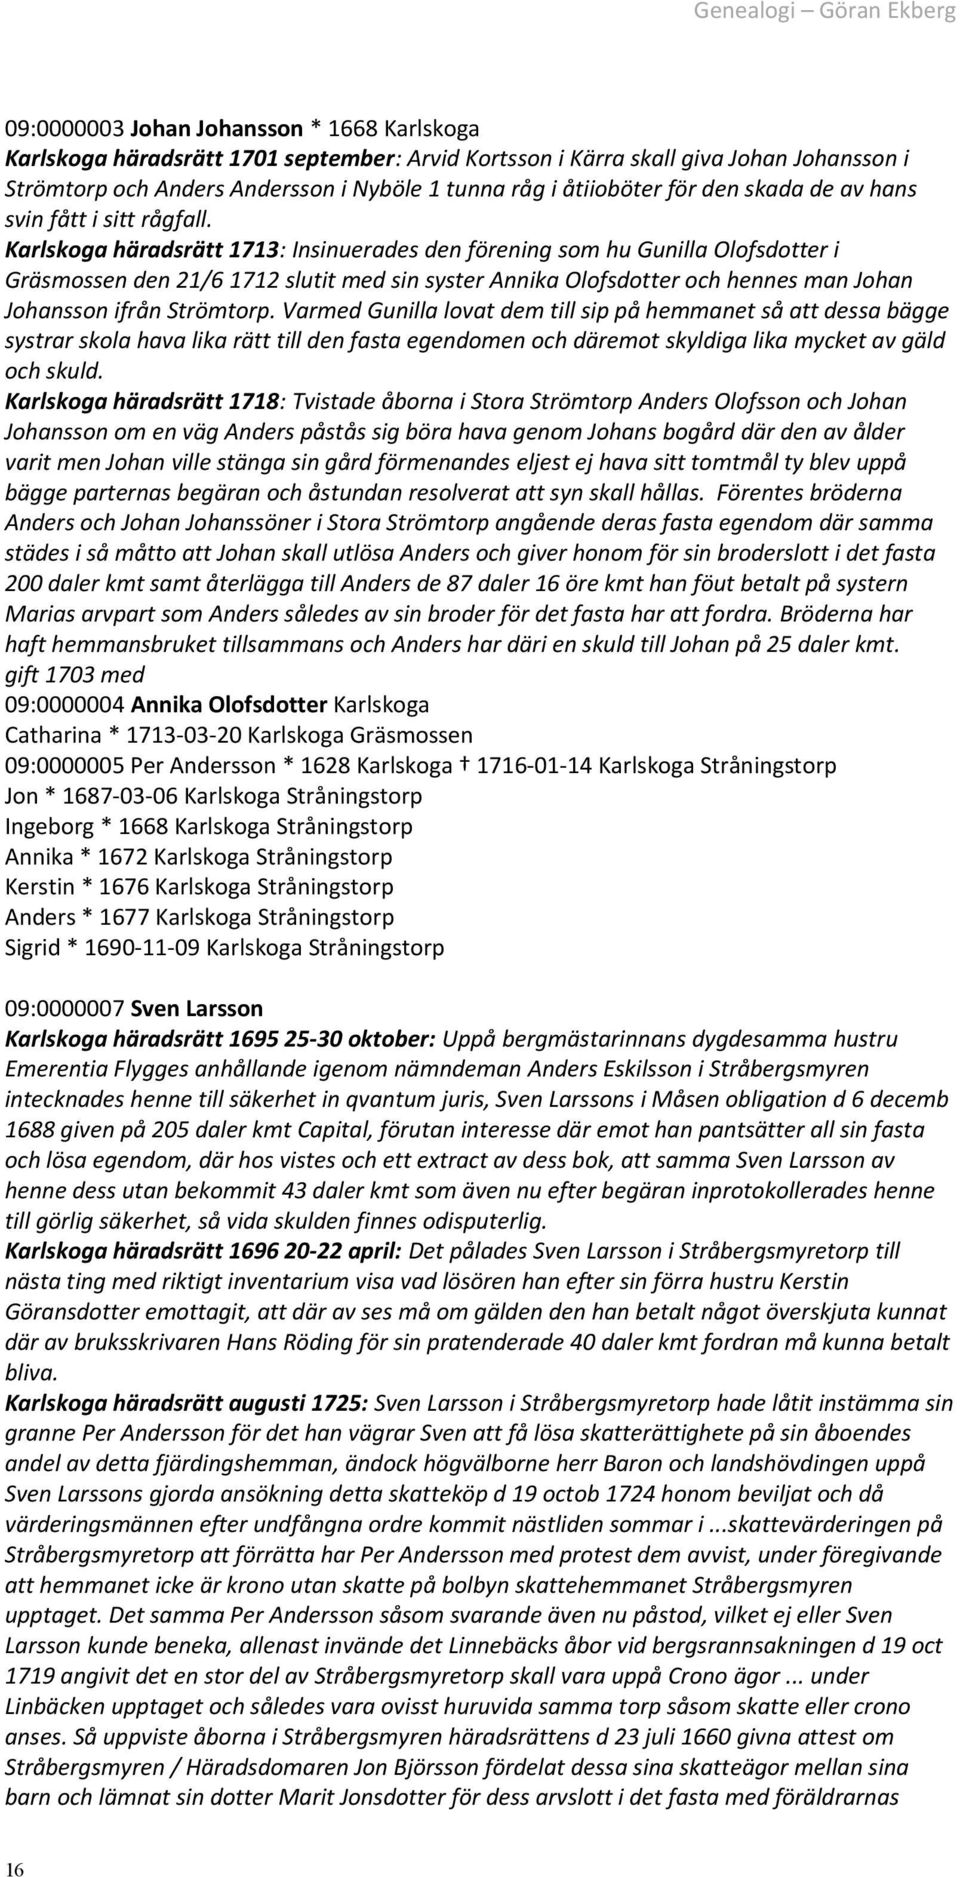 Karlskoga häradsrätt 1713: Insinuerades den förening som hu Gunilla Olofsdotter i Gräsmossen den 21/6 1712 slutit med sin syster Annika Olofsdotter och hennes man Johan Johansson ifrån Strömtorp.